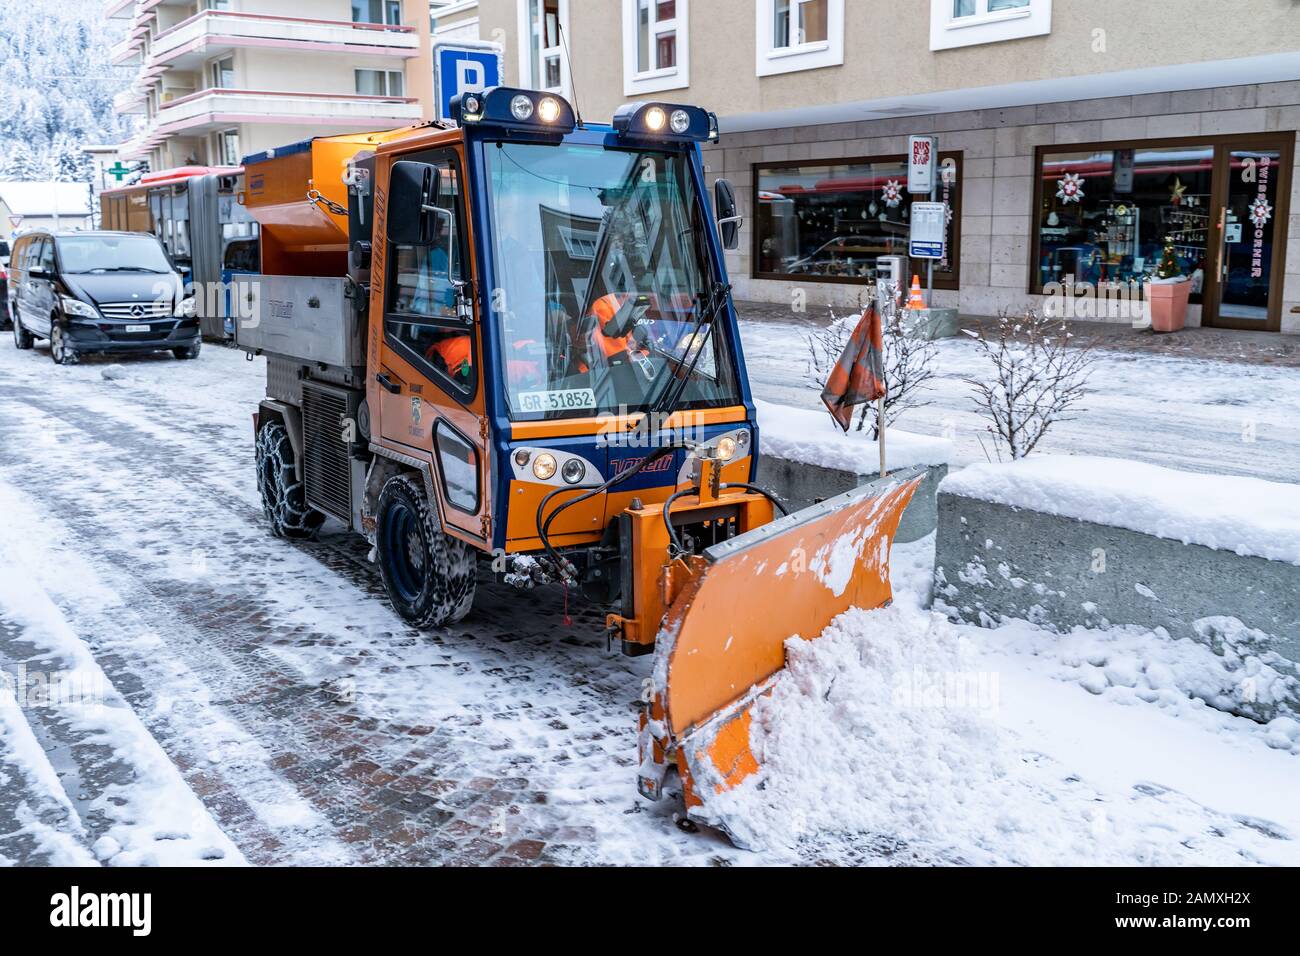 St. Moritz, Schweiz - 22. Dezember 2019 - Schnee säubert am 22. Dezember 2019 Lkw-Arbeiten, um Schnee von der Straße in St. Moritz, Schweiz zu räumen Stockfoto